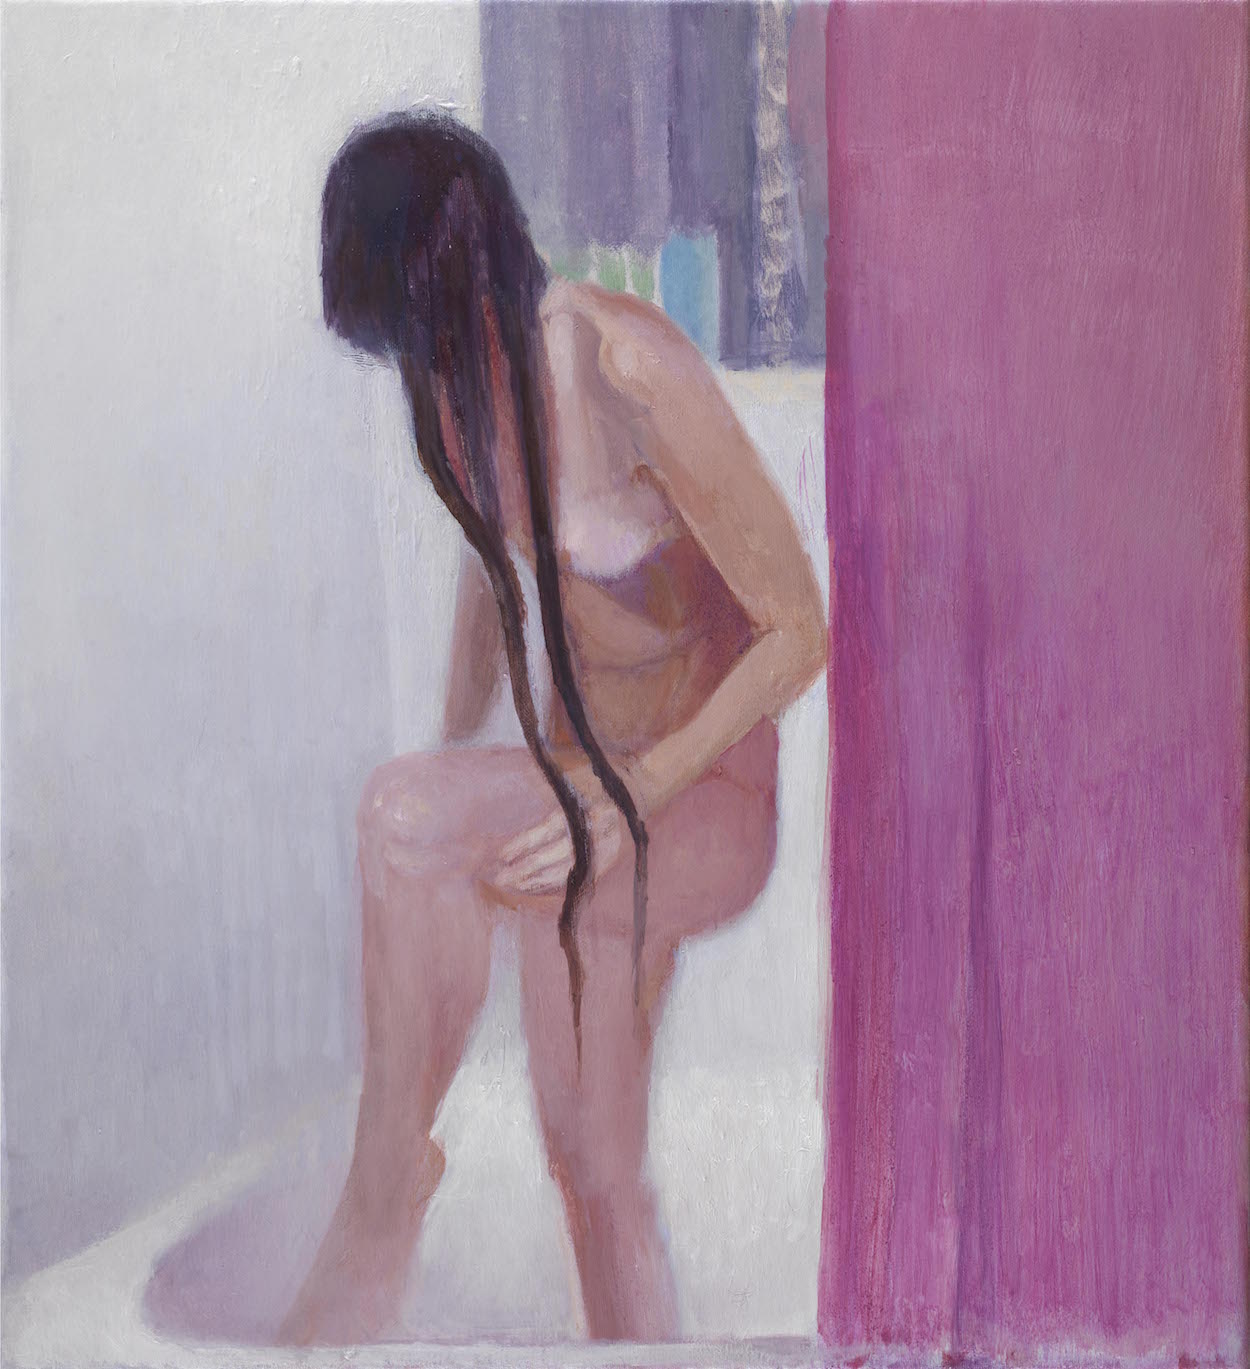 Πίνακας της Καλλιρόης Μαρούδα, «Κορίτσια στο μπάνιο», 2018